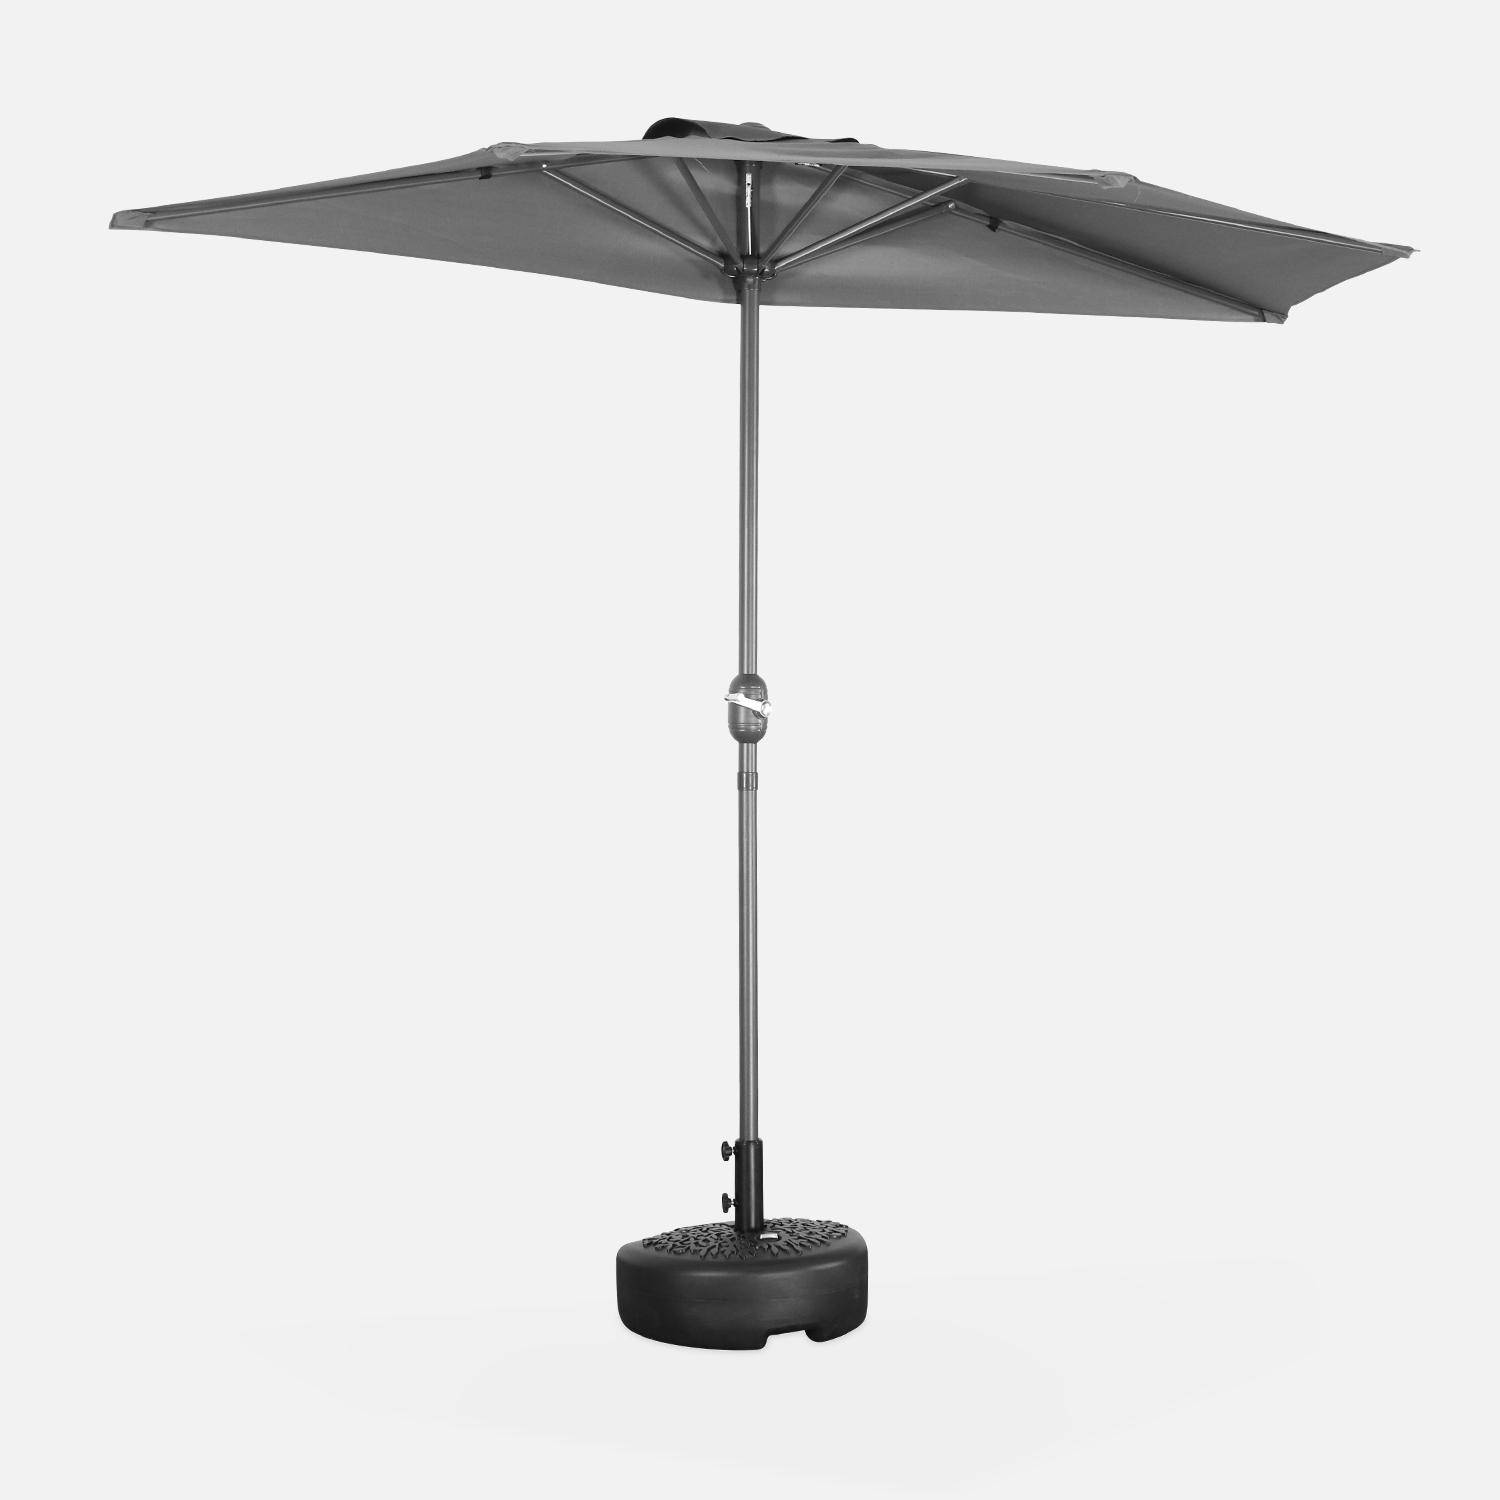  Parasol de balcon Ø250cm  – CALVI – Demi-parasol droit, mât en aluminium avec manivelle d’ouverture, toile grise Photo1